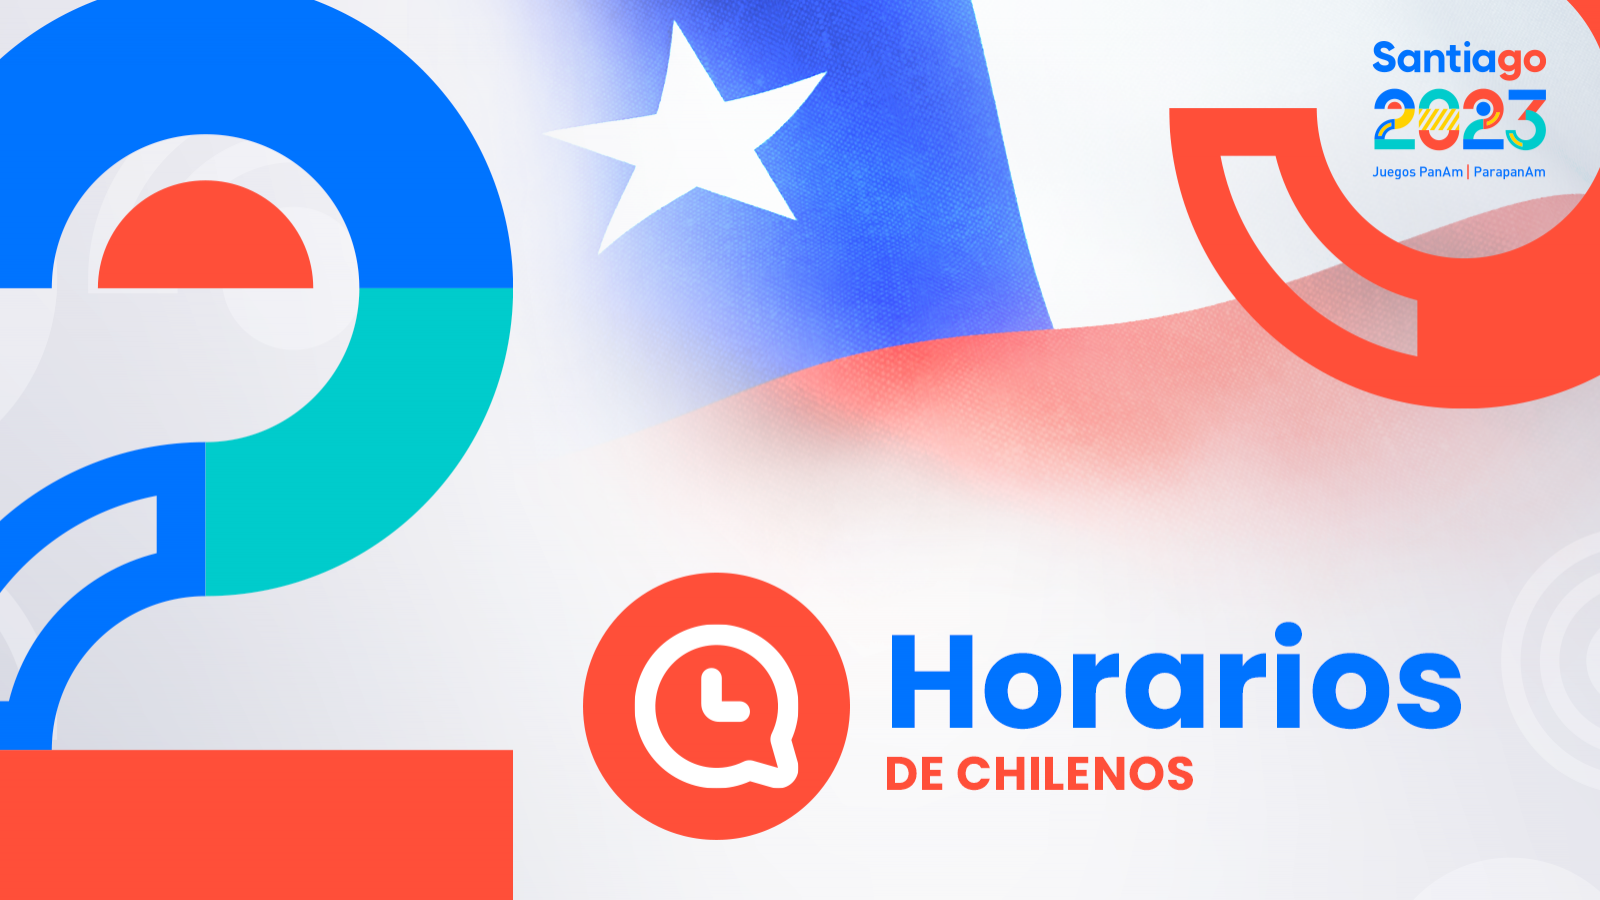 HORARIOS de chilenos en Santiago 2023: sábado 28 de octubre